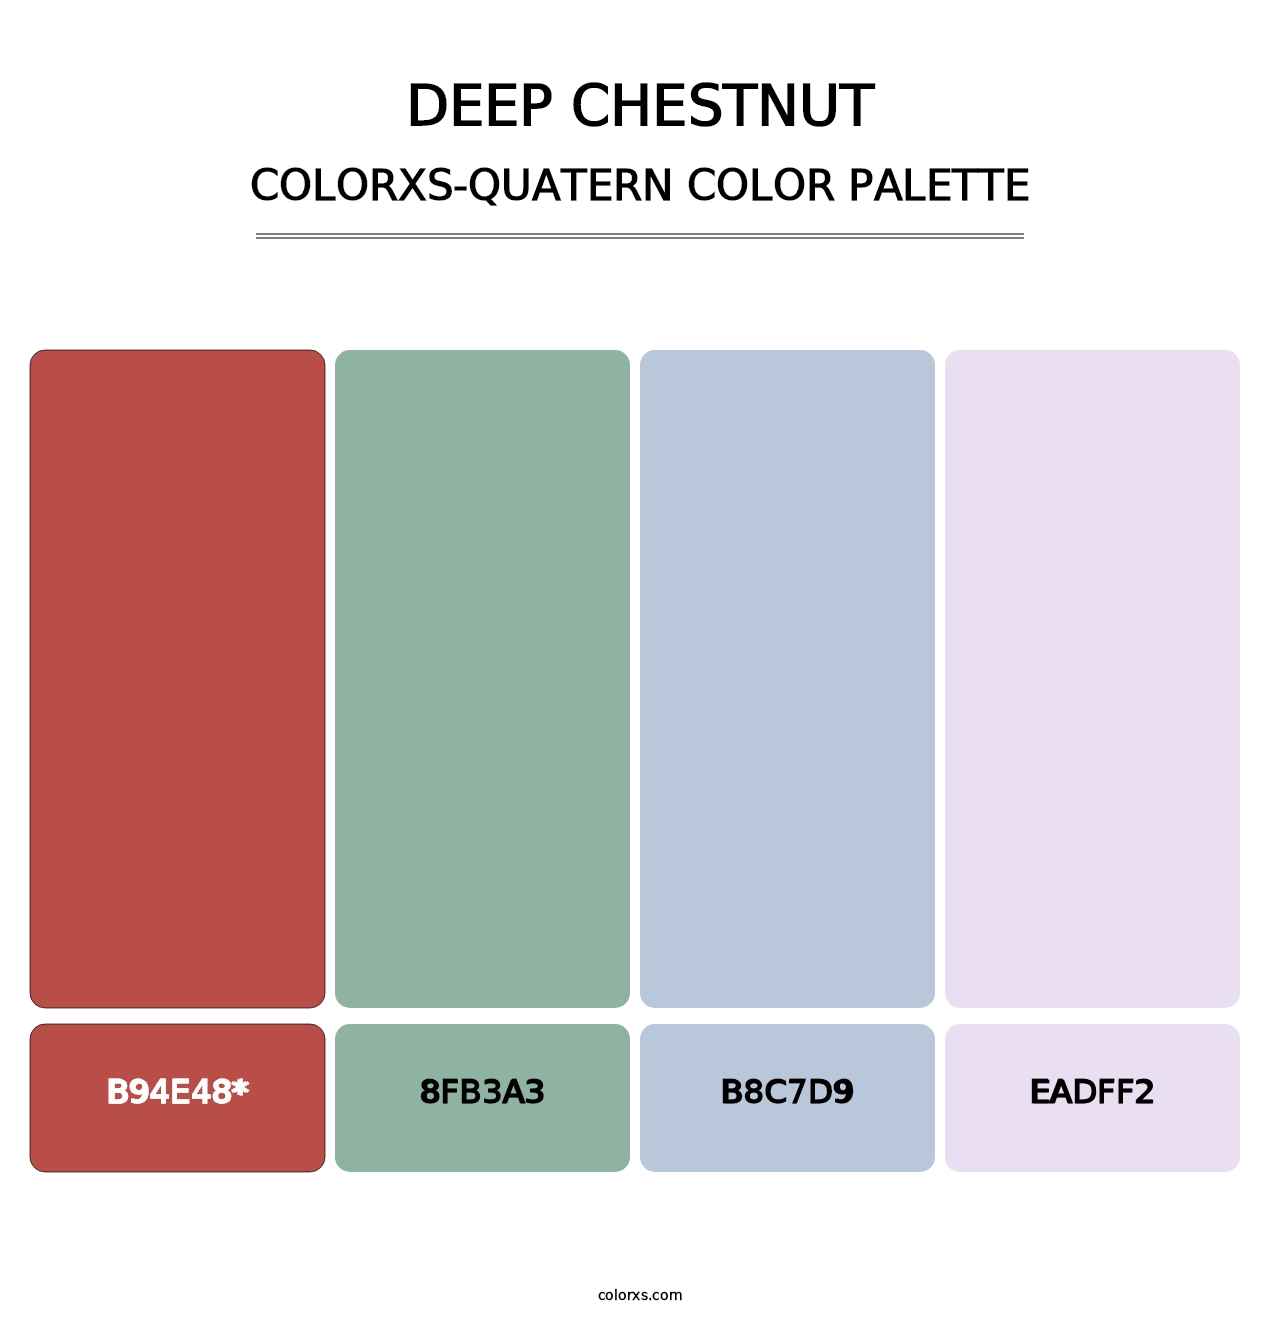 Deep Chestnut - Colorxs Quatern Palette